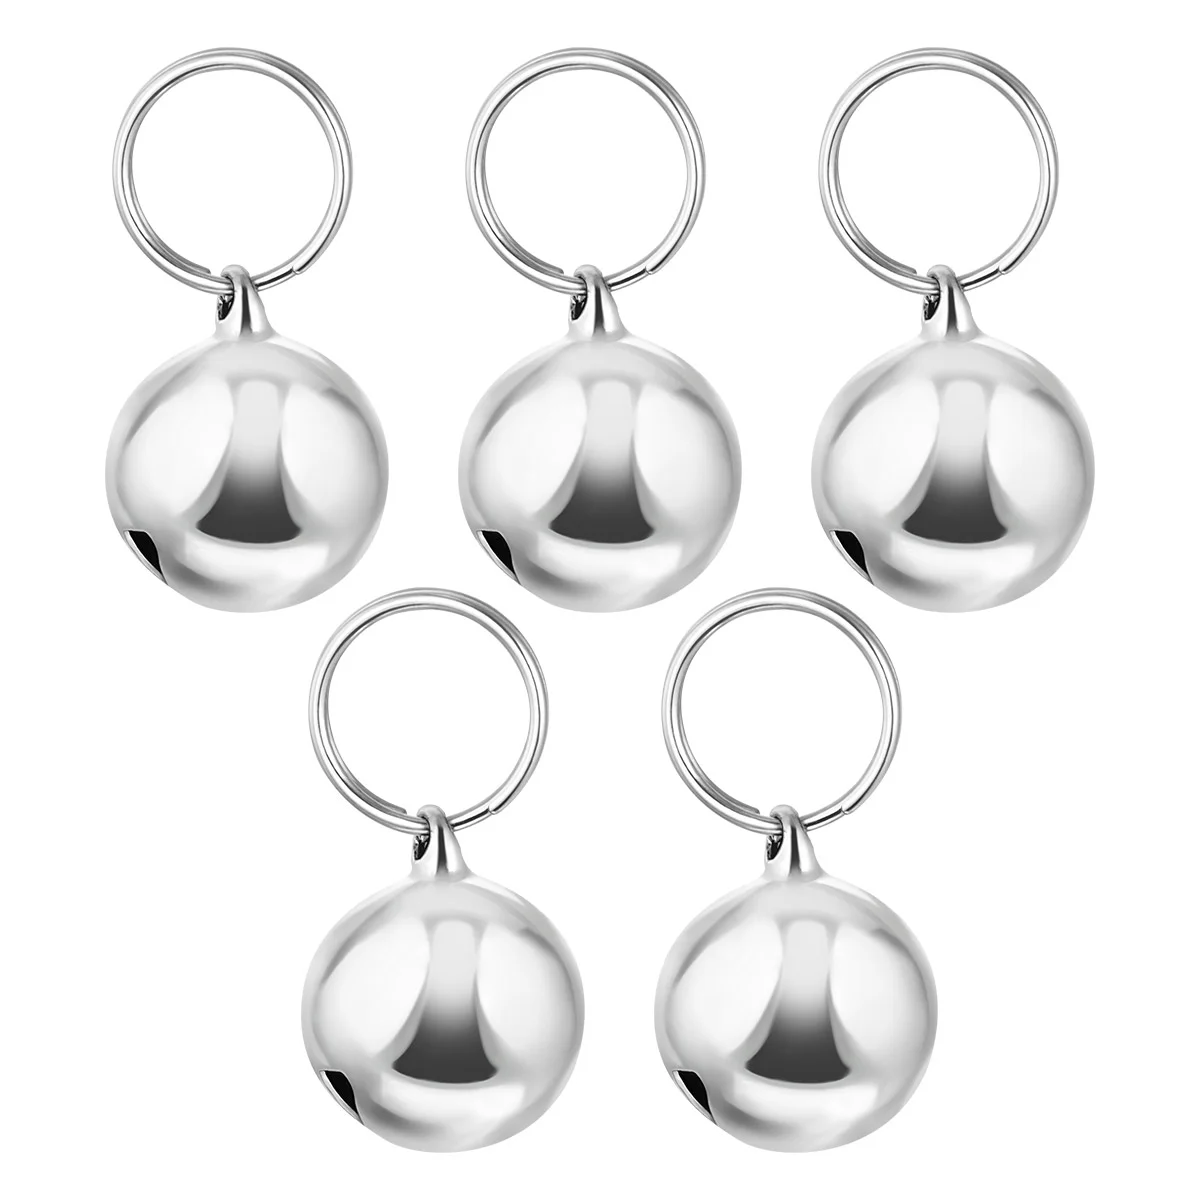 Tanio 5 sztuk metalowe dzwonki dla sklep